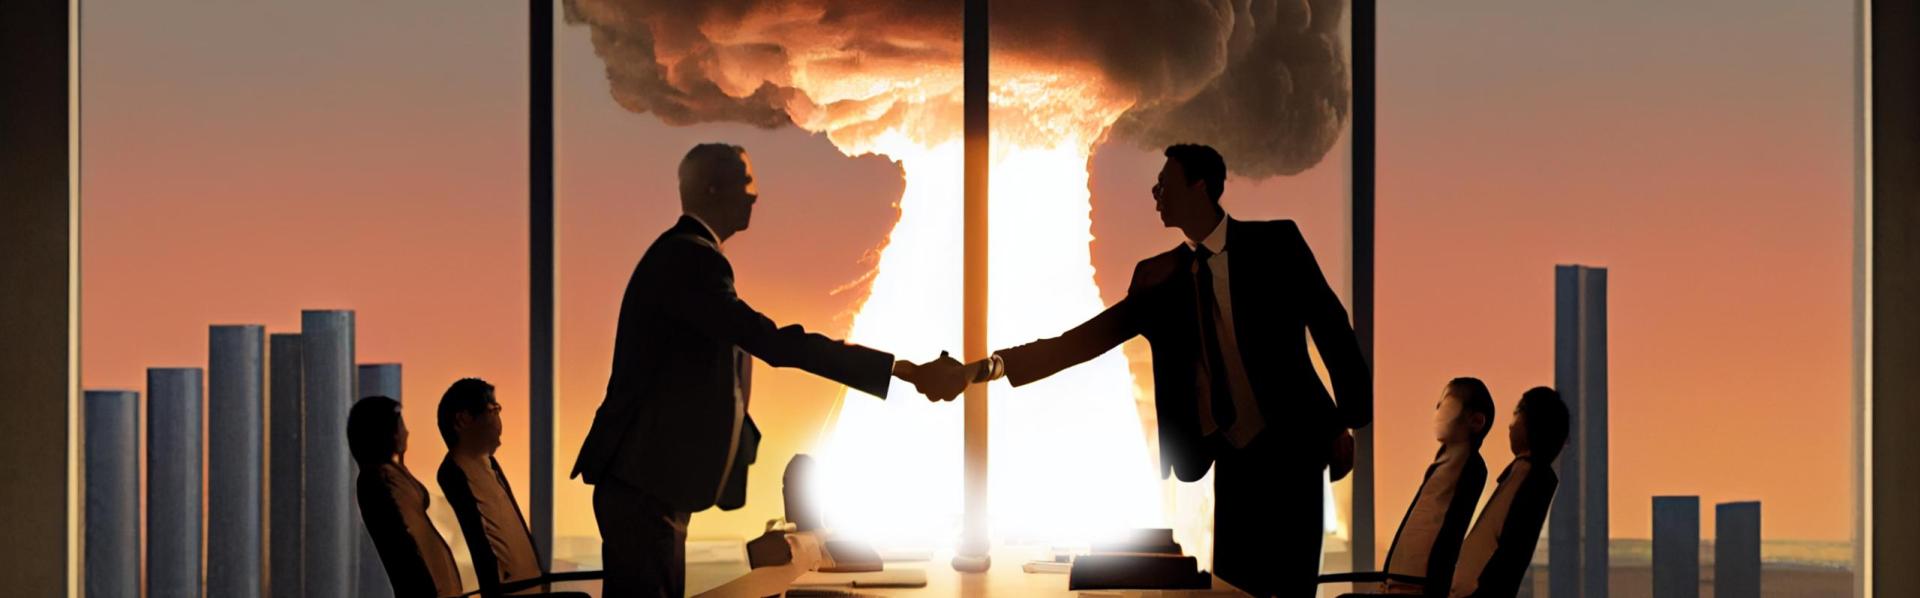 2 onderhandelaars in kantoorgebouw met kernexplosie op achtergrond